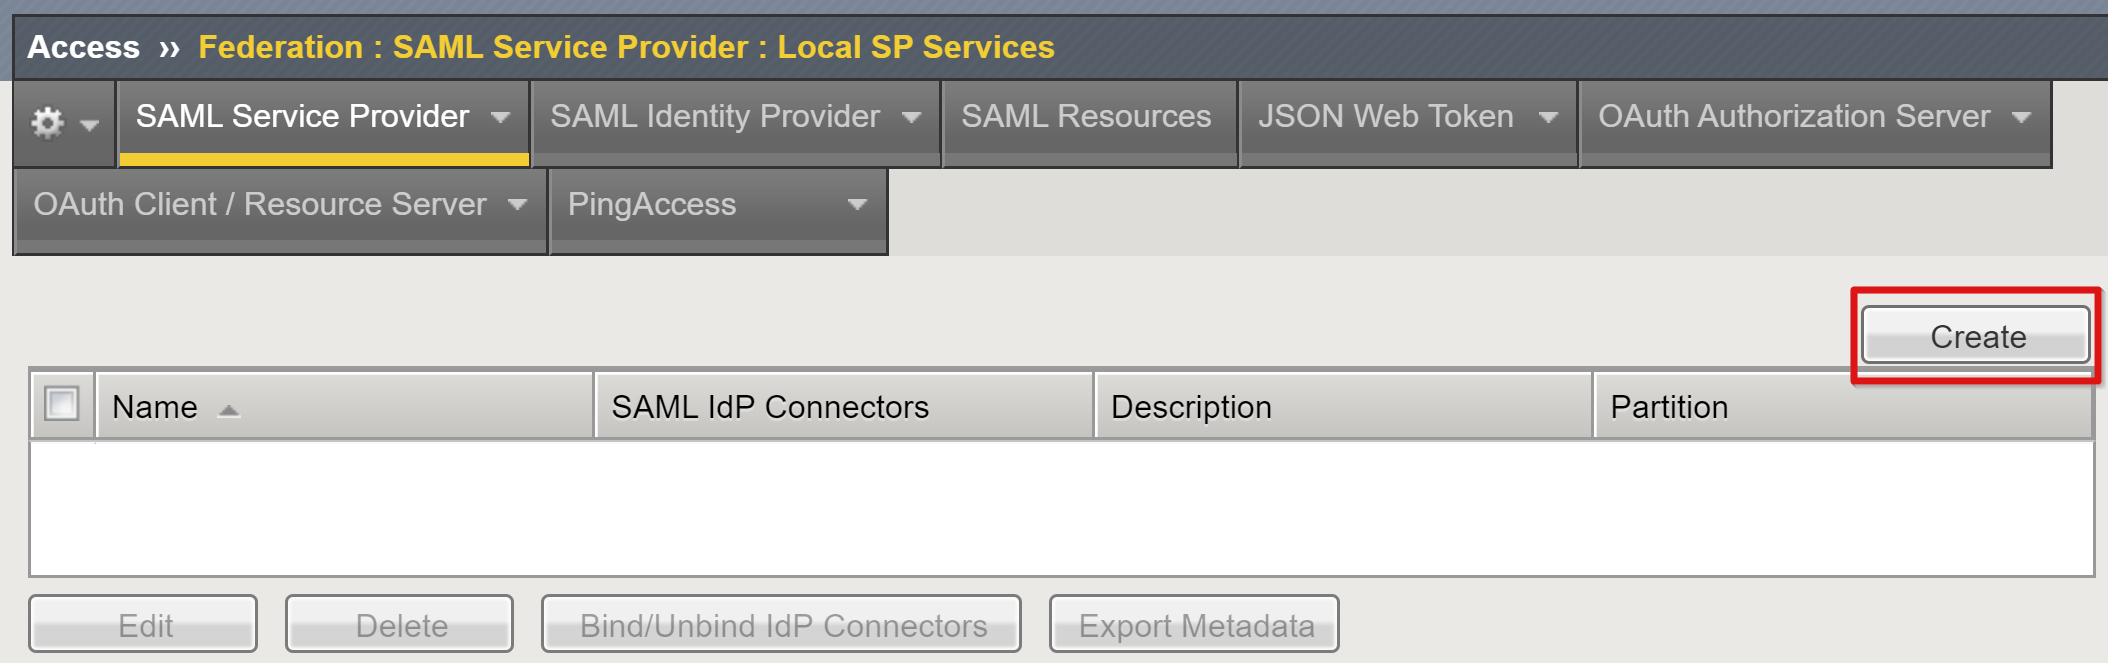 Captura de pantalla de la opción (Create) Crear en SAML Service Provider (Proveedor de servicios SAML) en Local SP Services (Servicios SP locales).